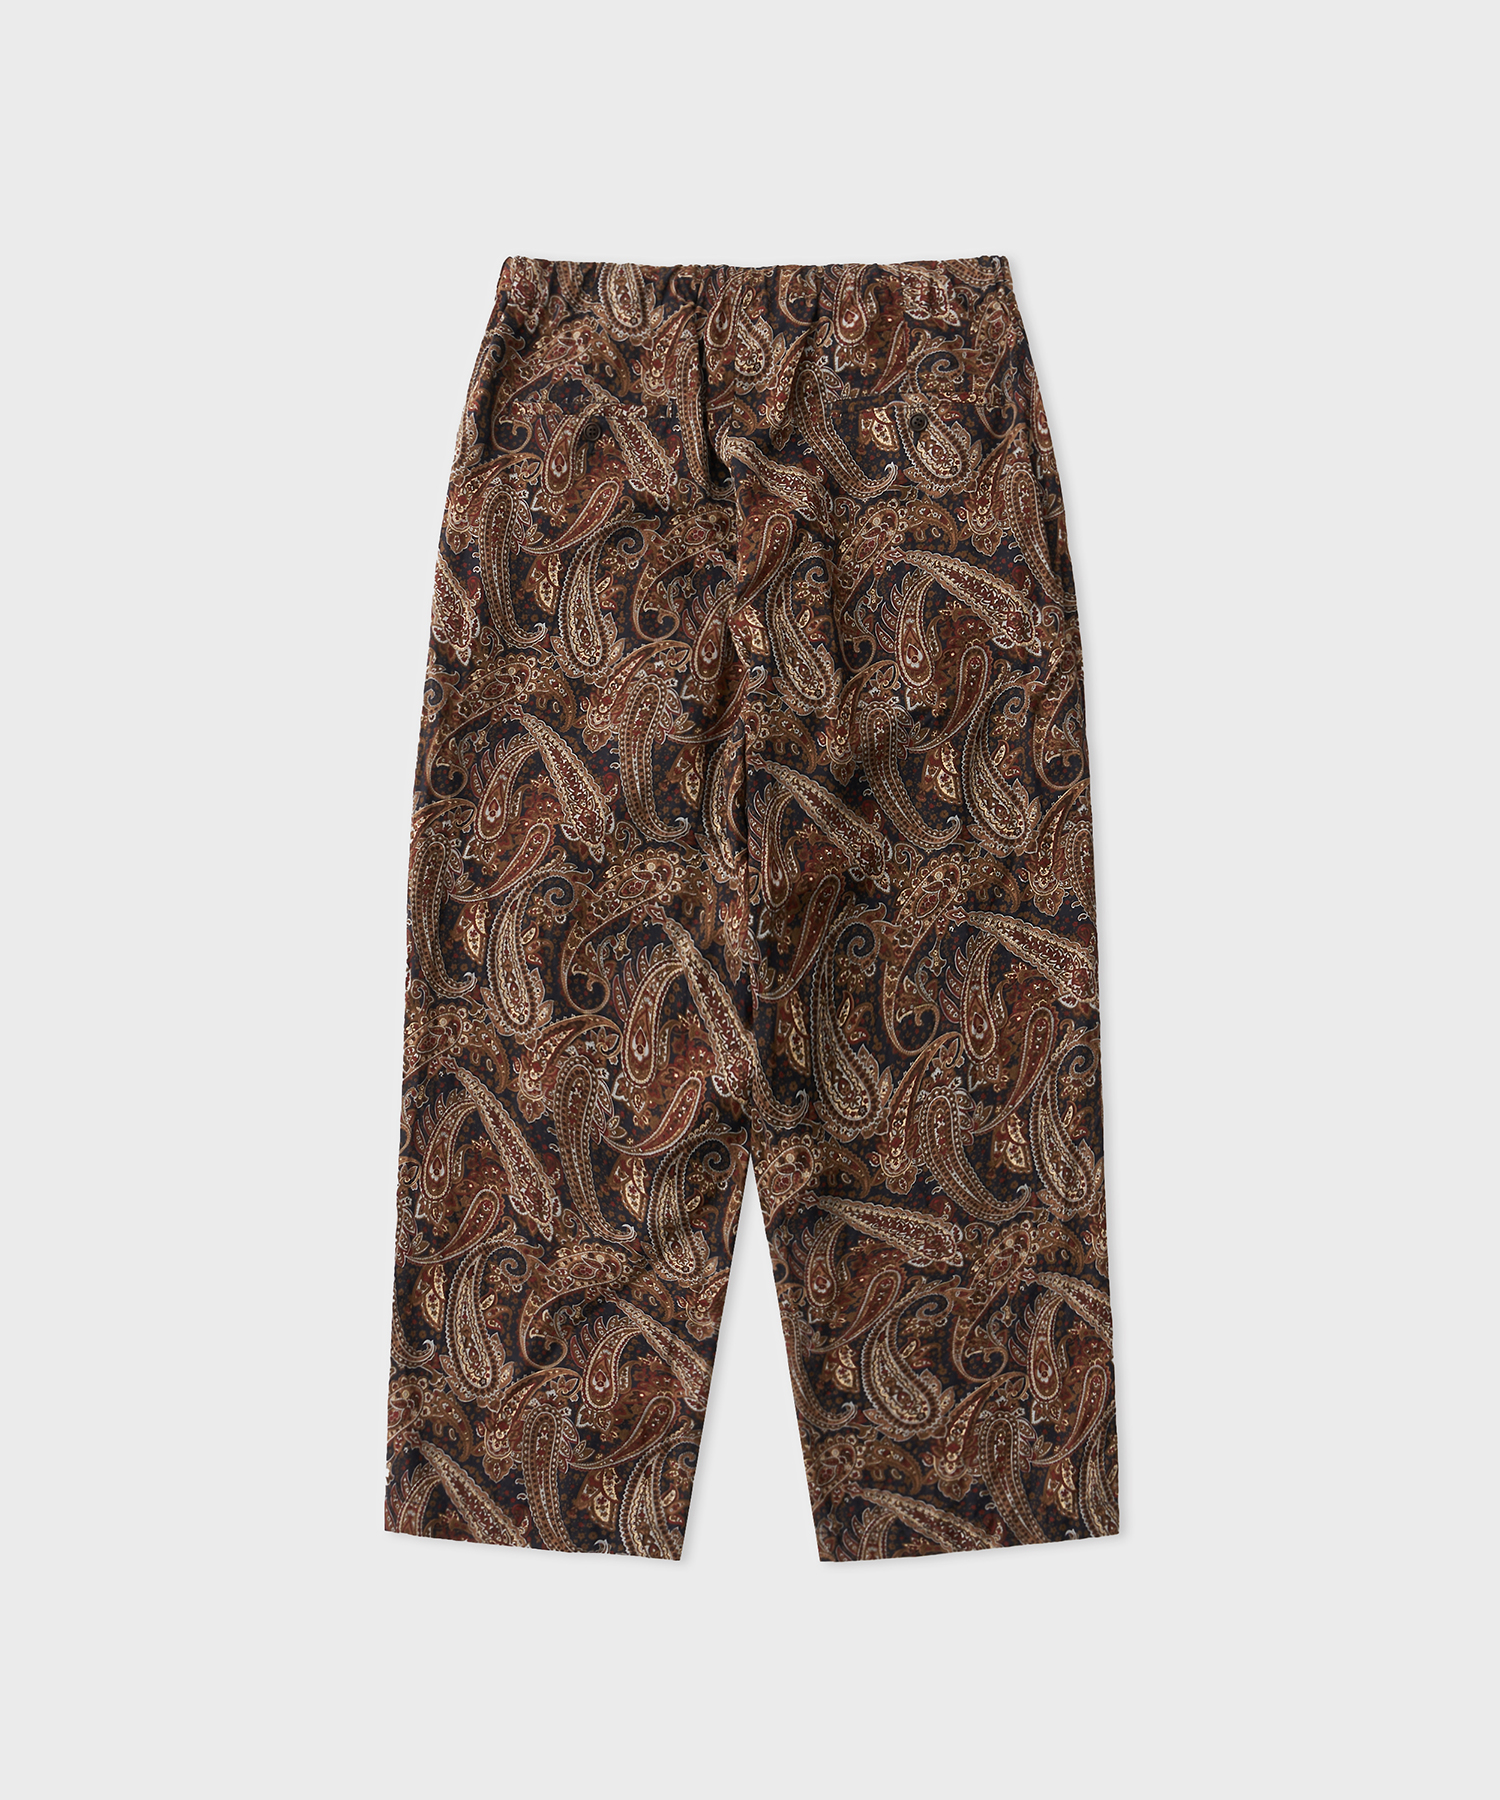 Paisley Pajama Trousers (Brown)